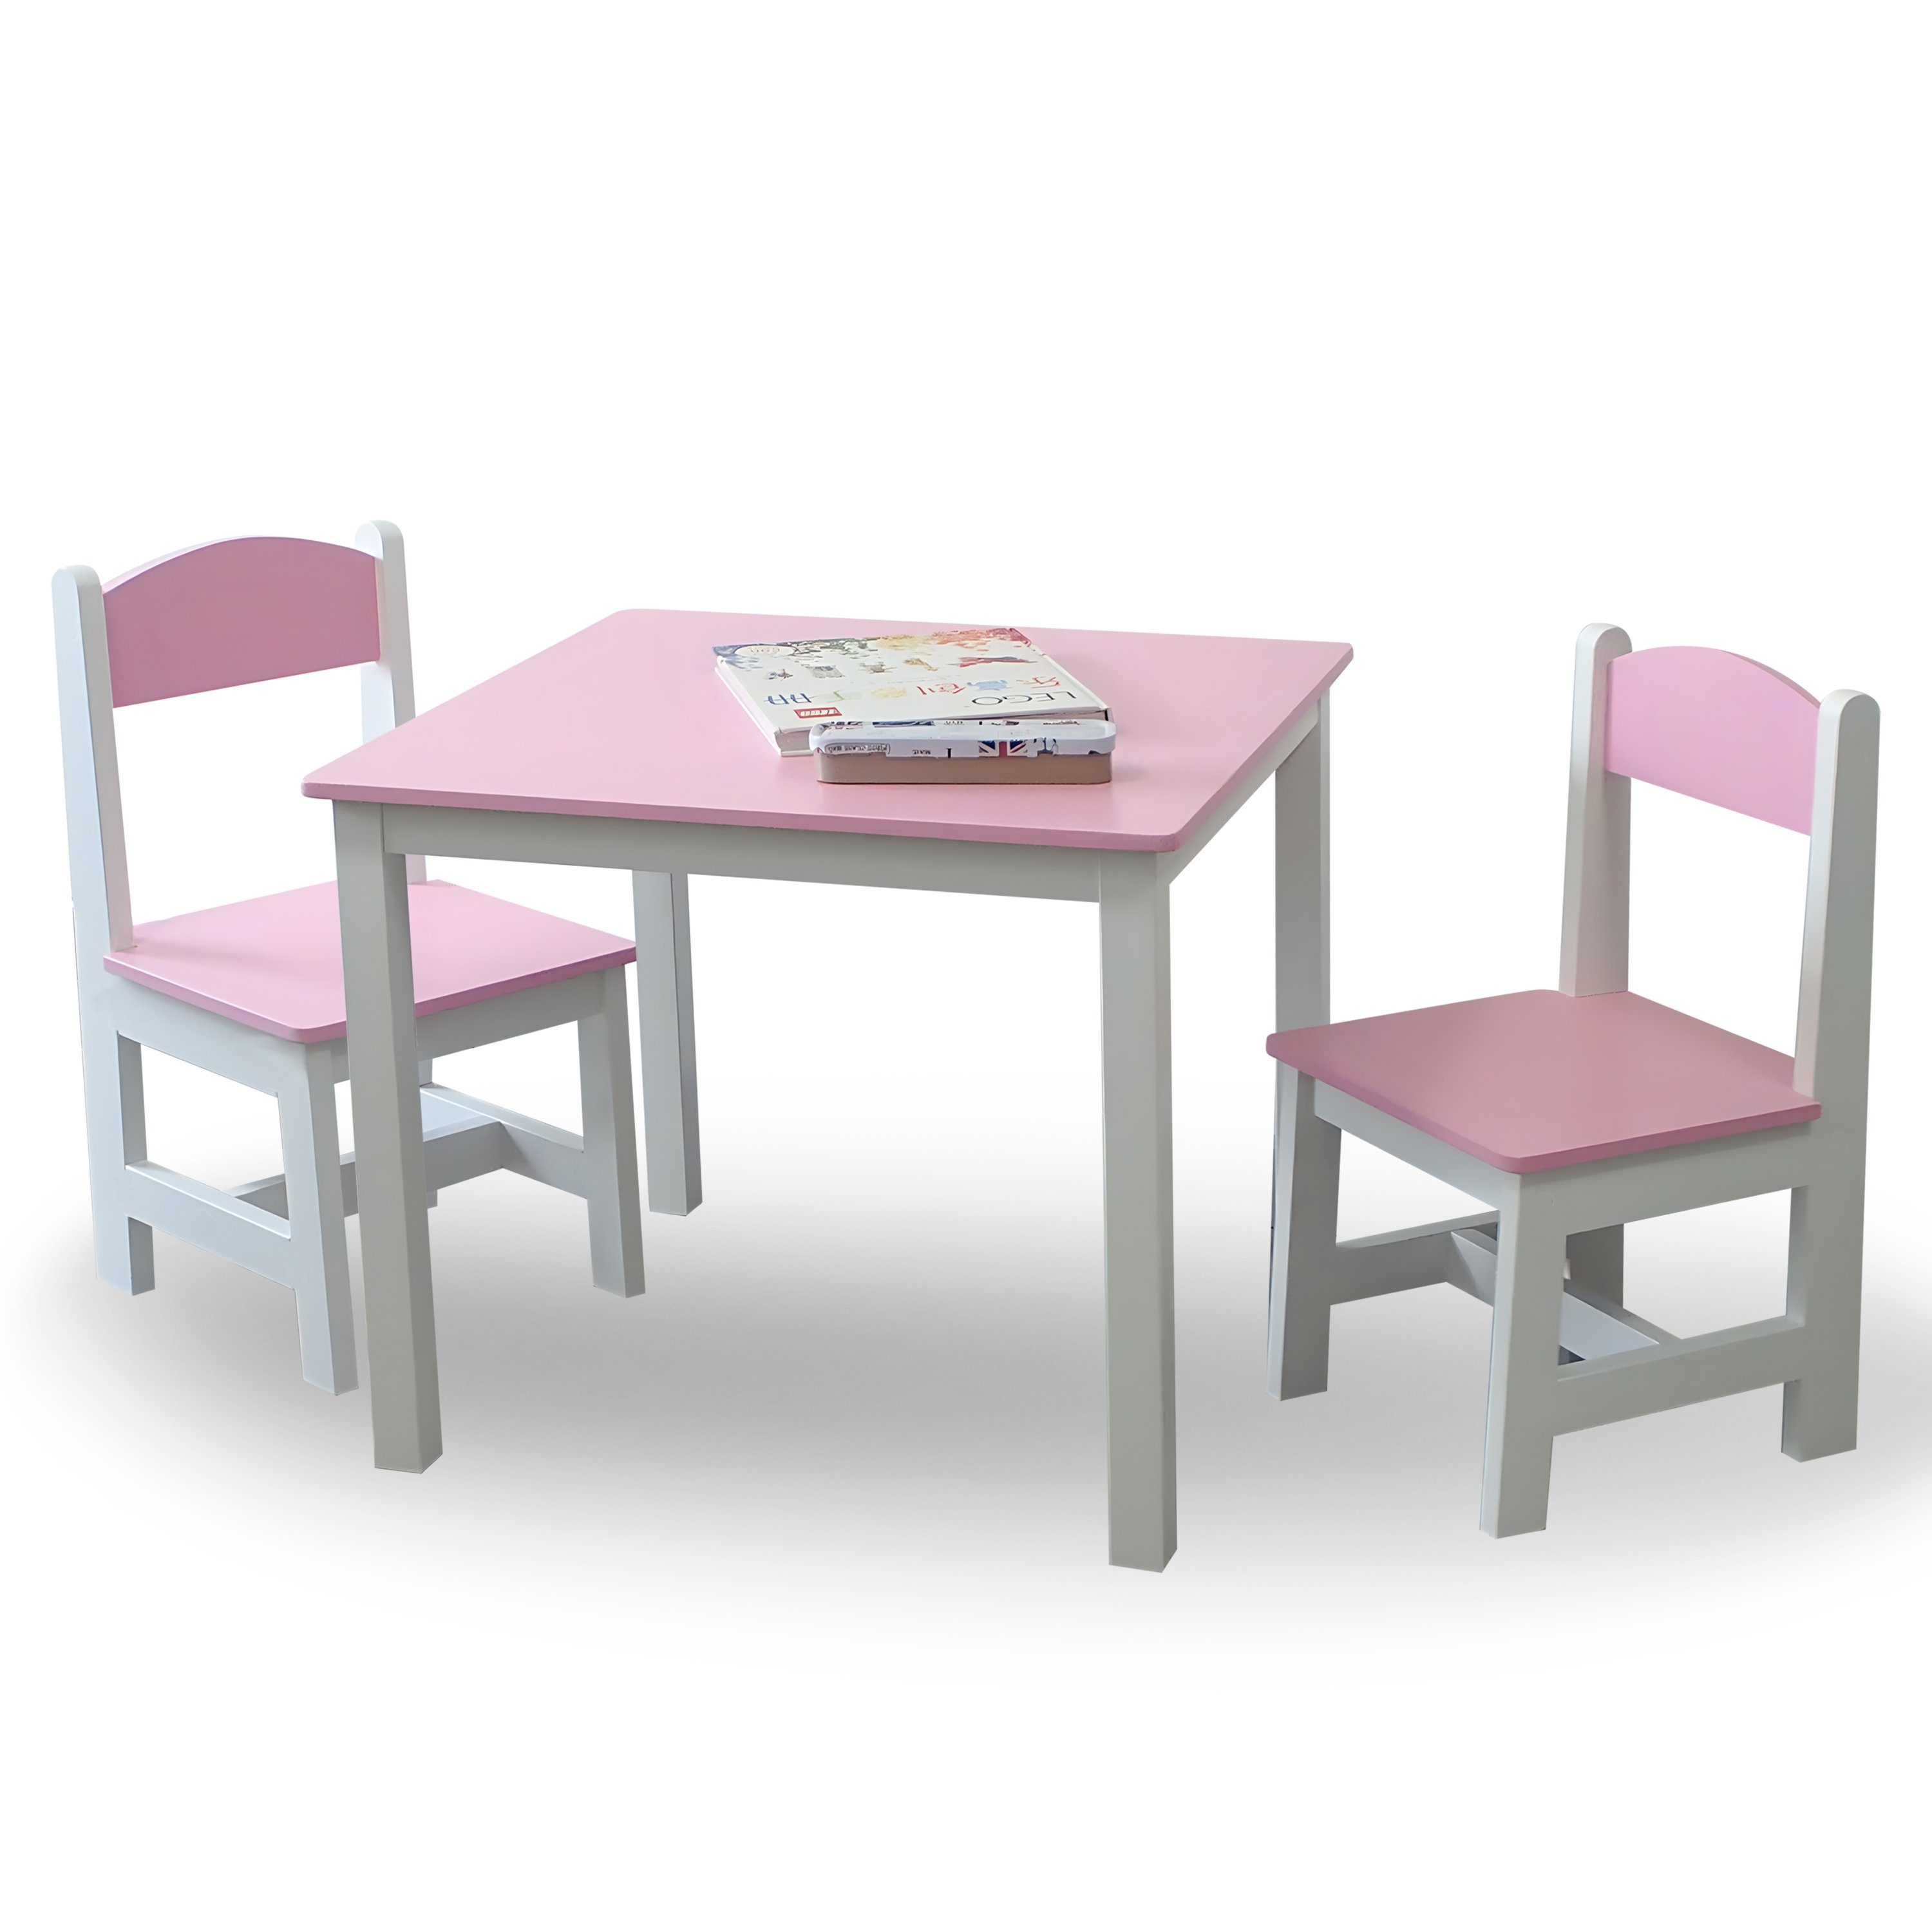 habeig Kindersitzgruppe Kindertisch Kindermöbelset 60x50x50cm Rosa+Weiß 2 Hocker & Maltisch Stühle